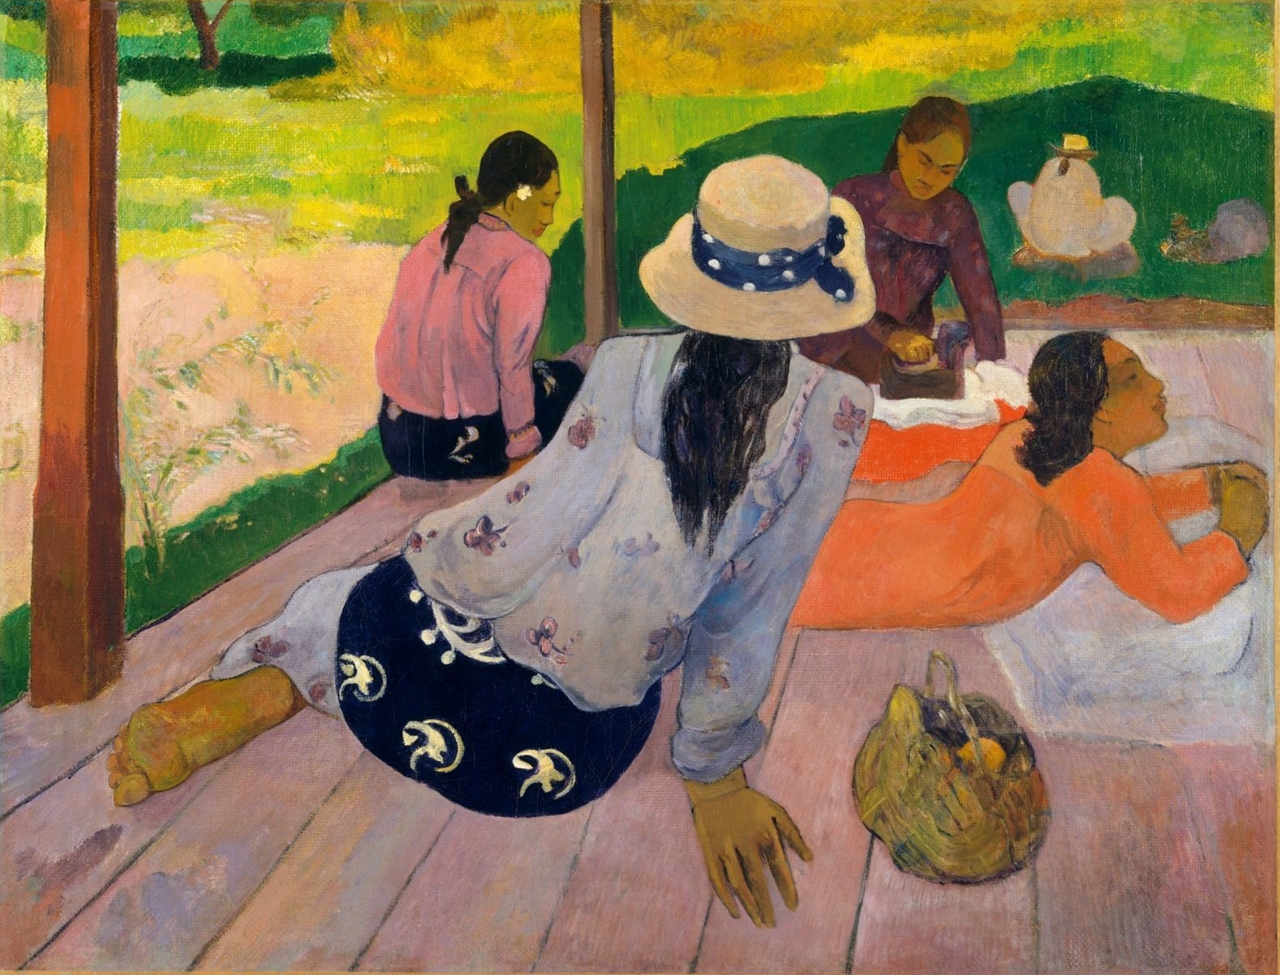 Paul+Gauguin-1848-1903 (373).jpg